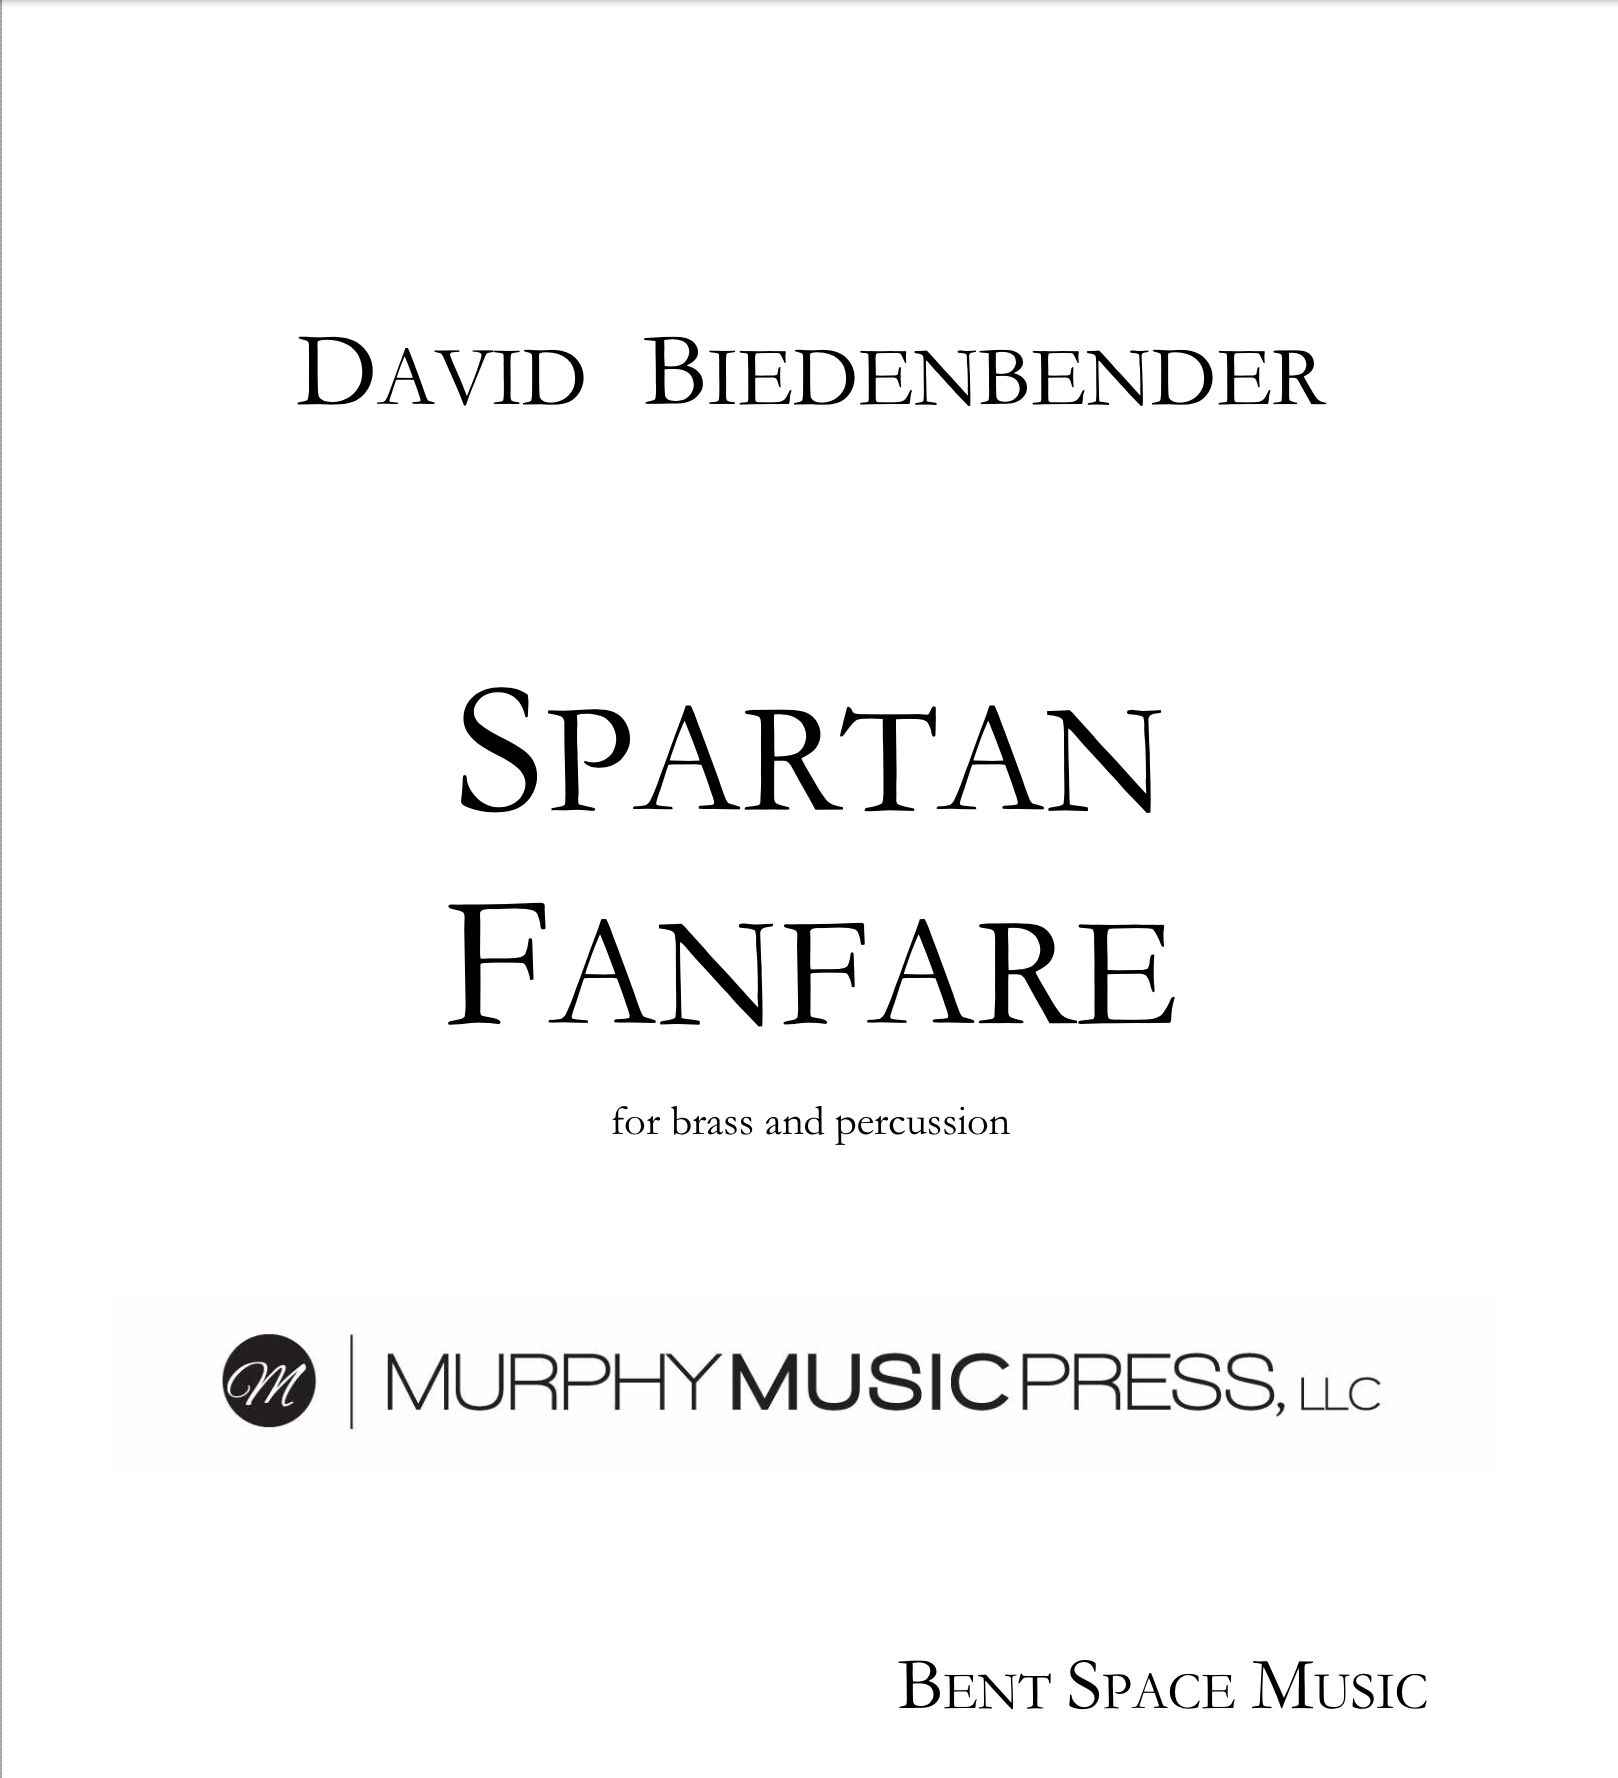 Spartan Fanfare by David Biedenbender 